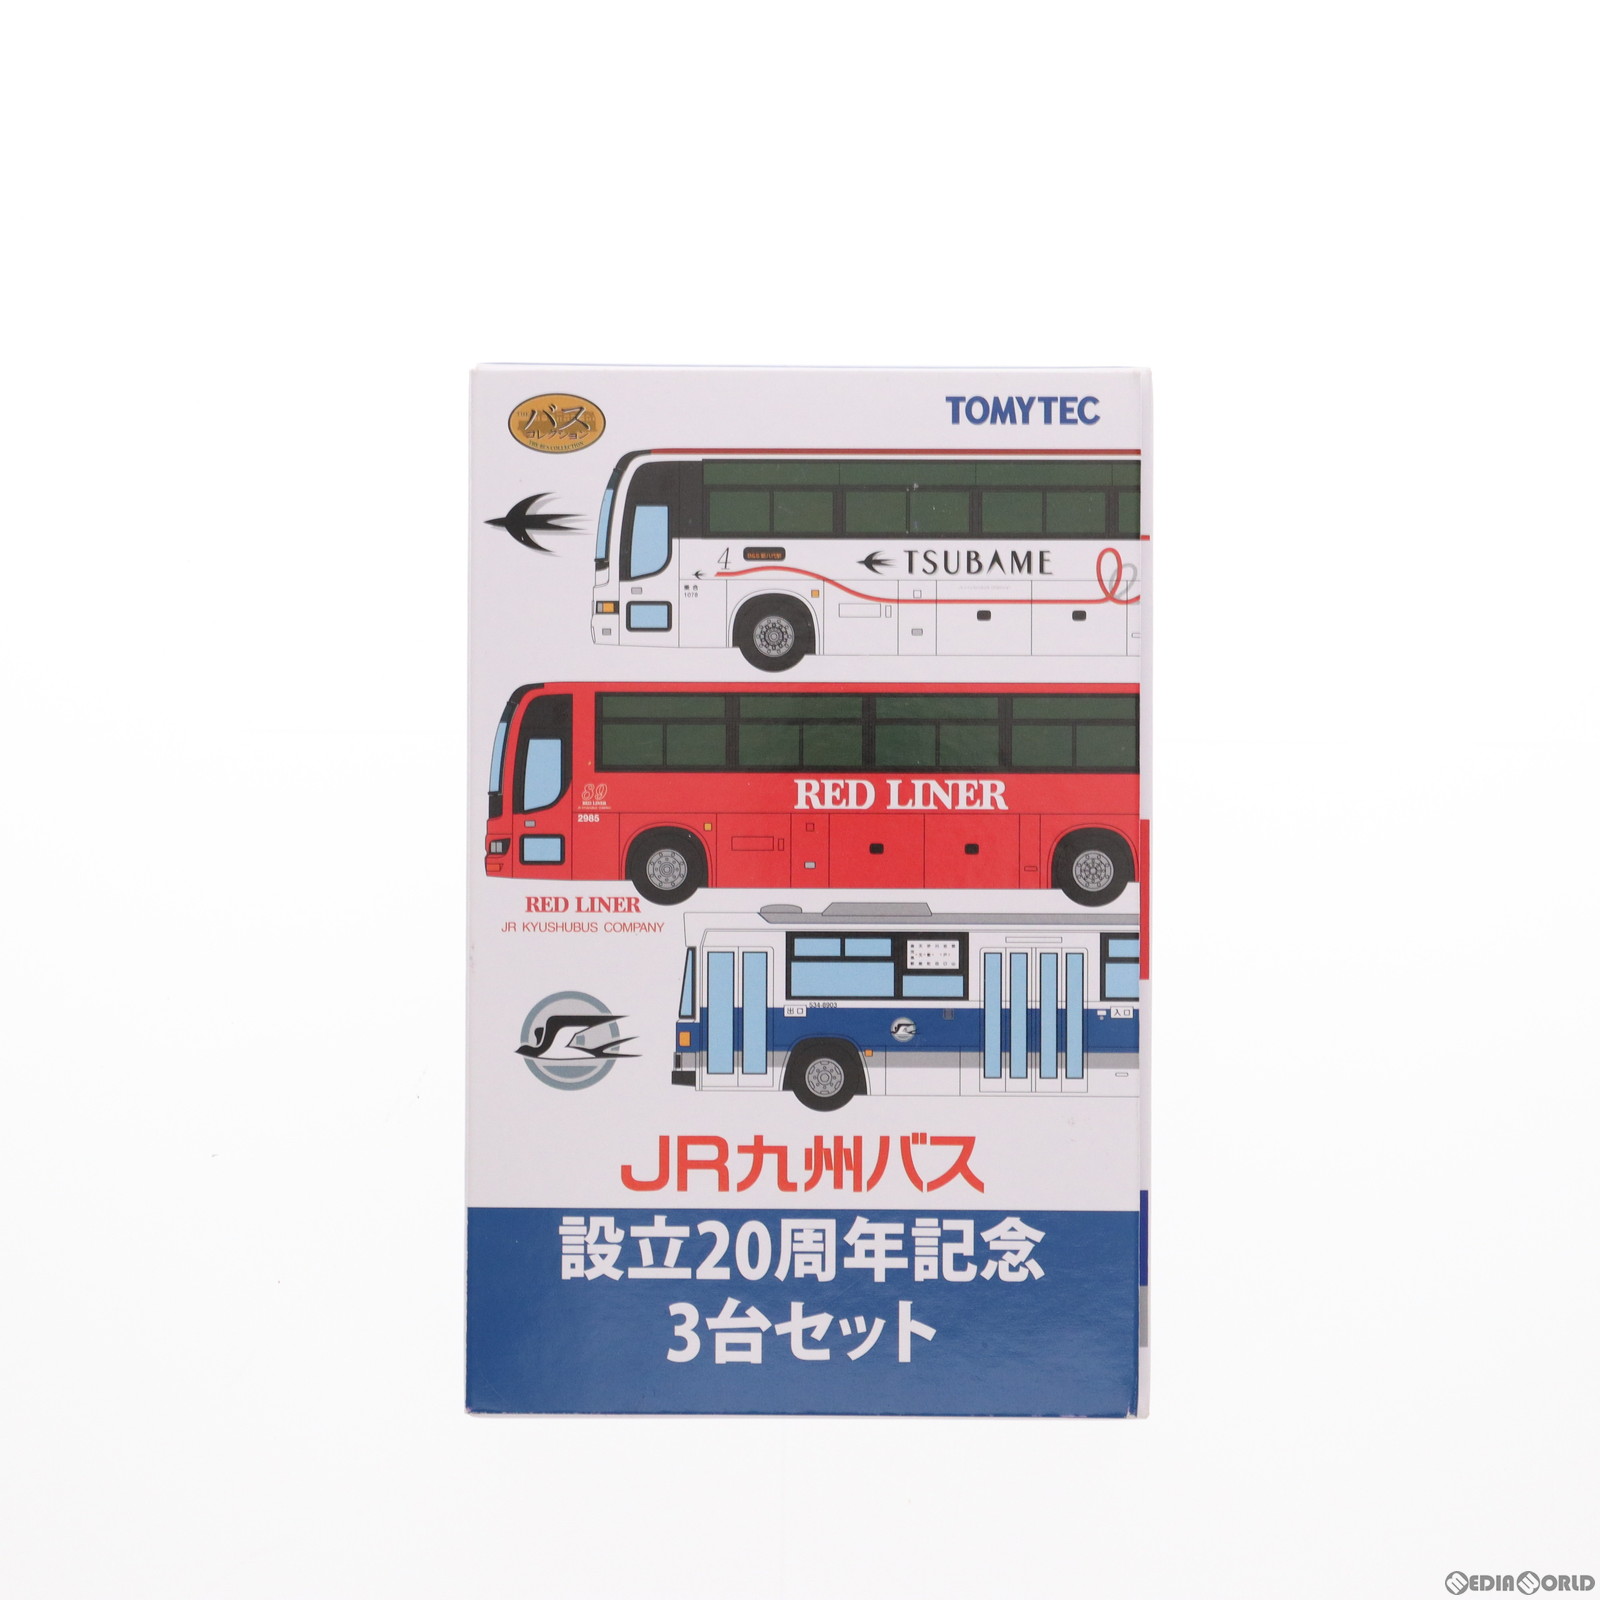 【中古即納】[RWM]323389 ザ・バスコレクション JR九州バス設立20周年記念3台セット Nゲージ 鉄道模型 TOMYTEC(トミーテック)(20220723)